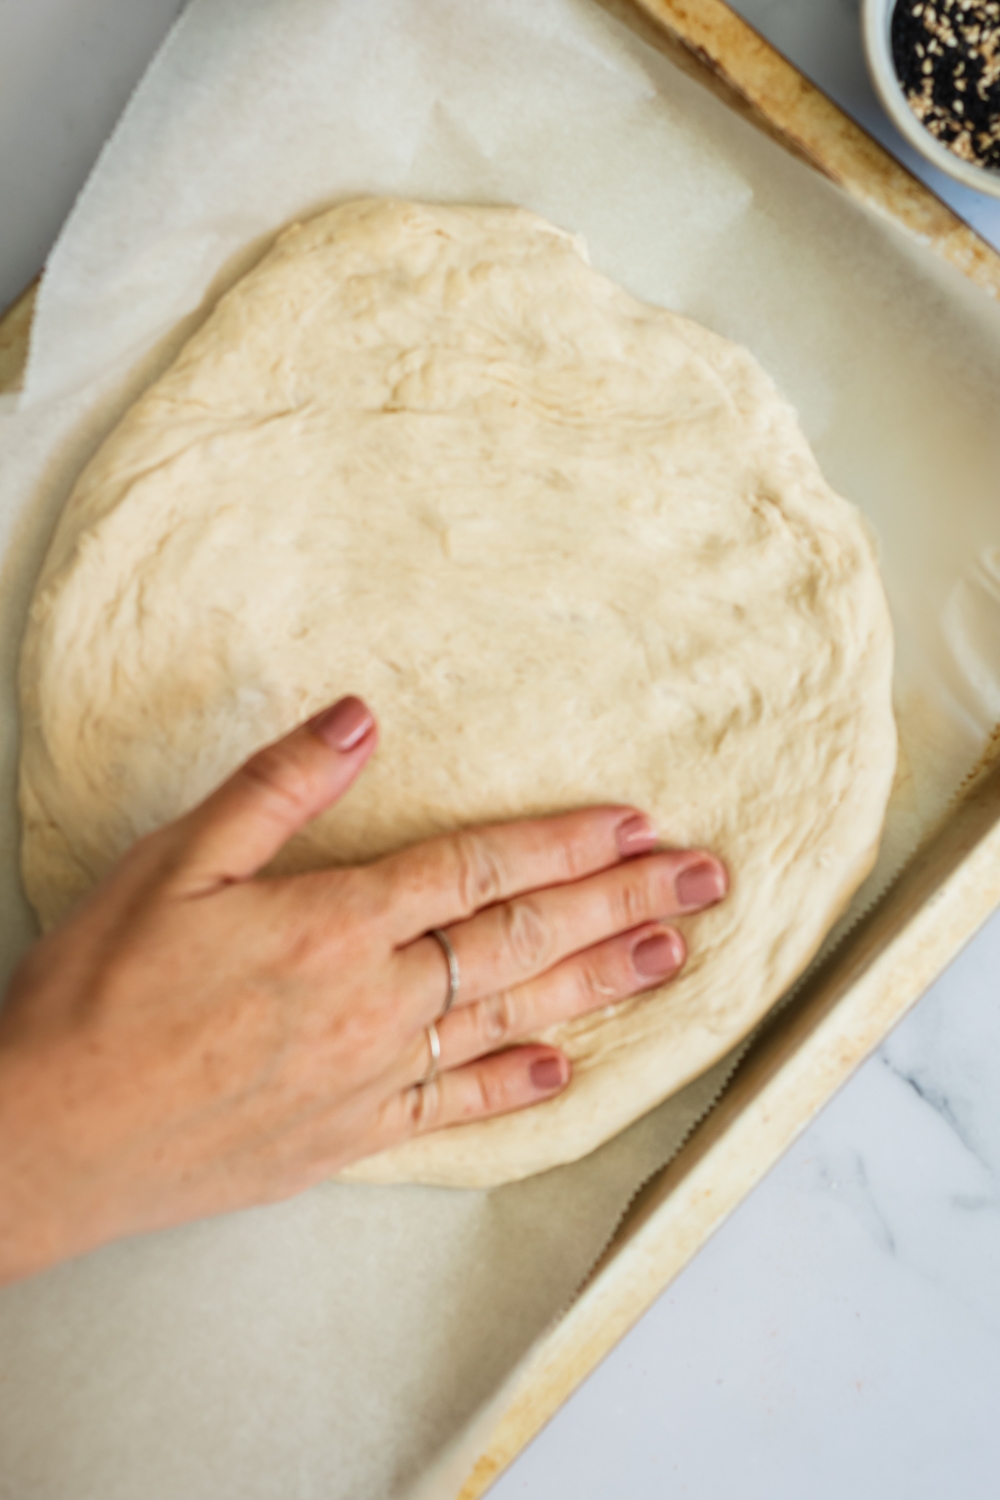 A hand flattening dough on a baking sheet.